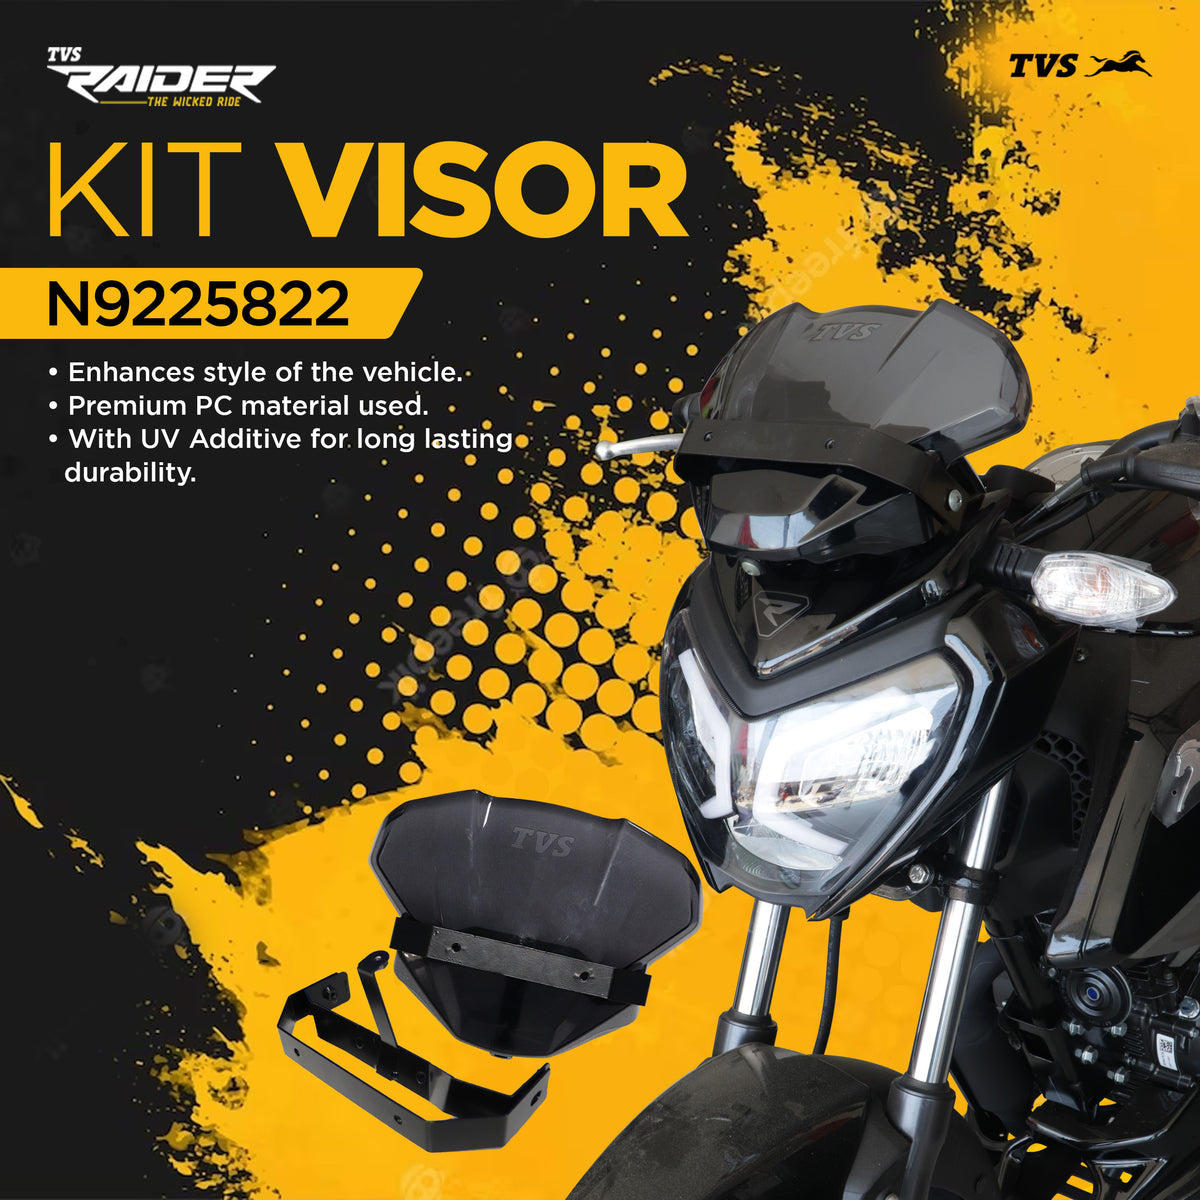 Kit Visor - TVS Raider